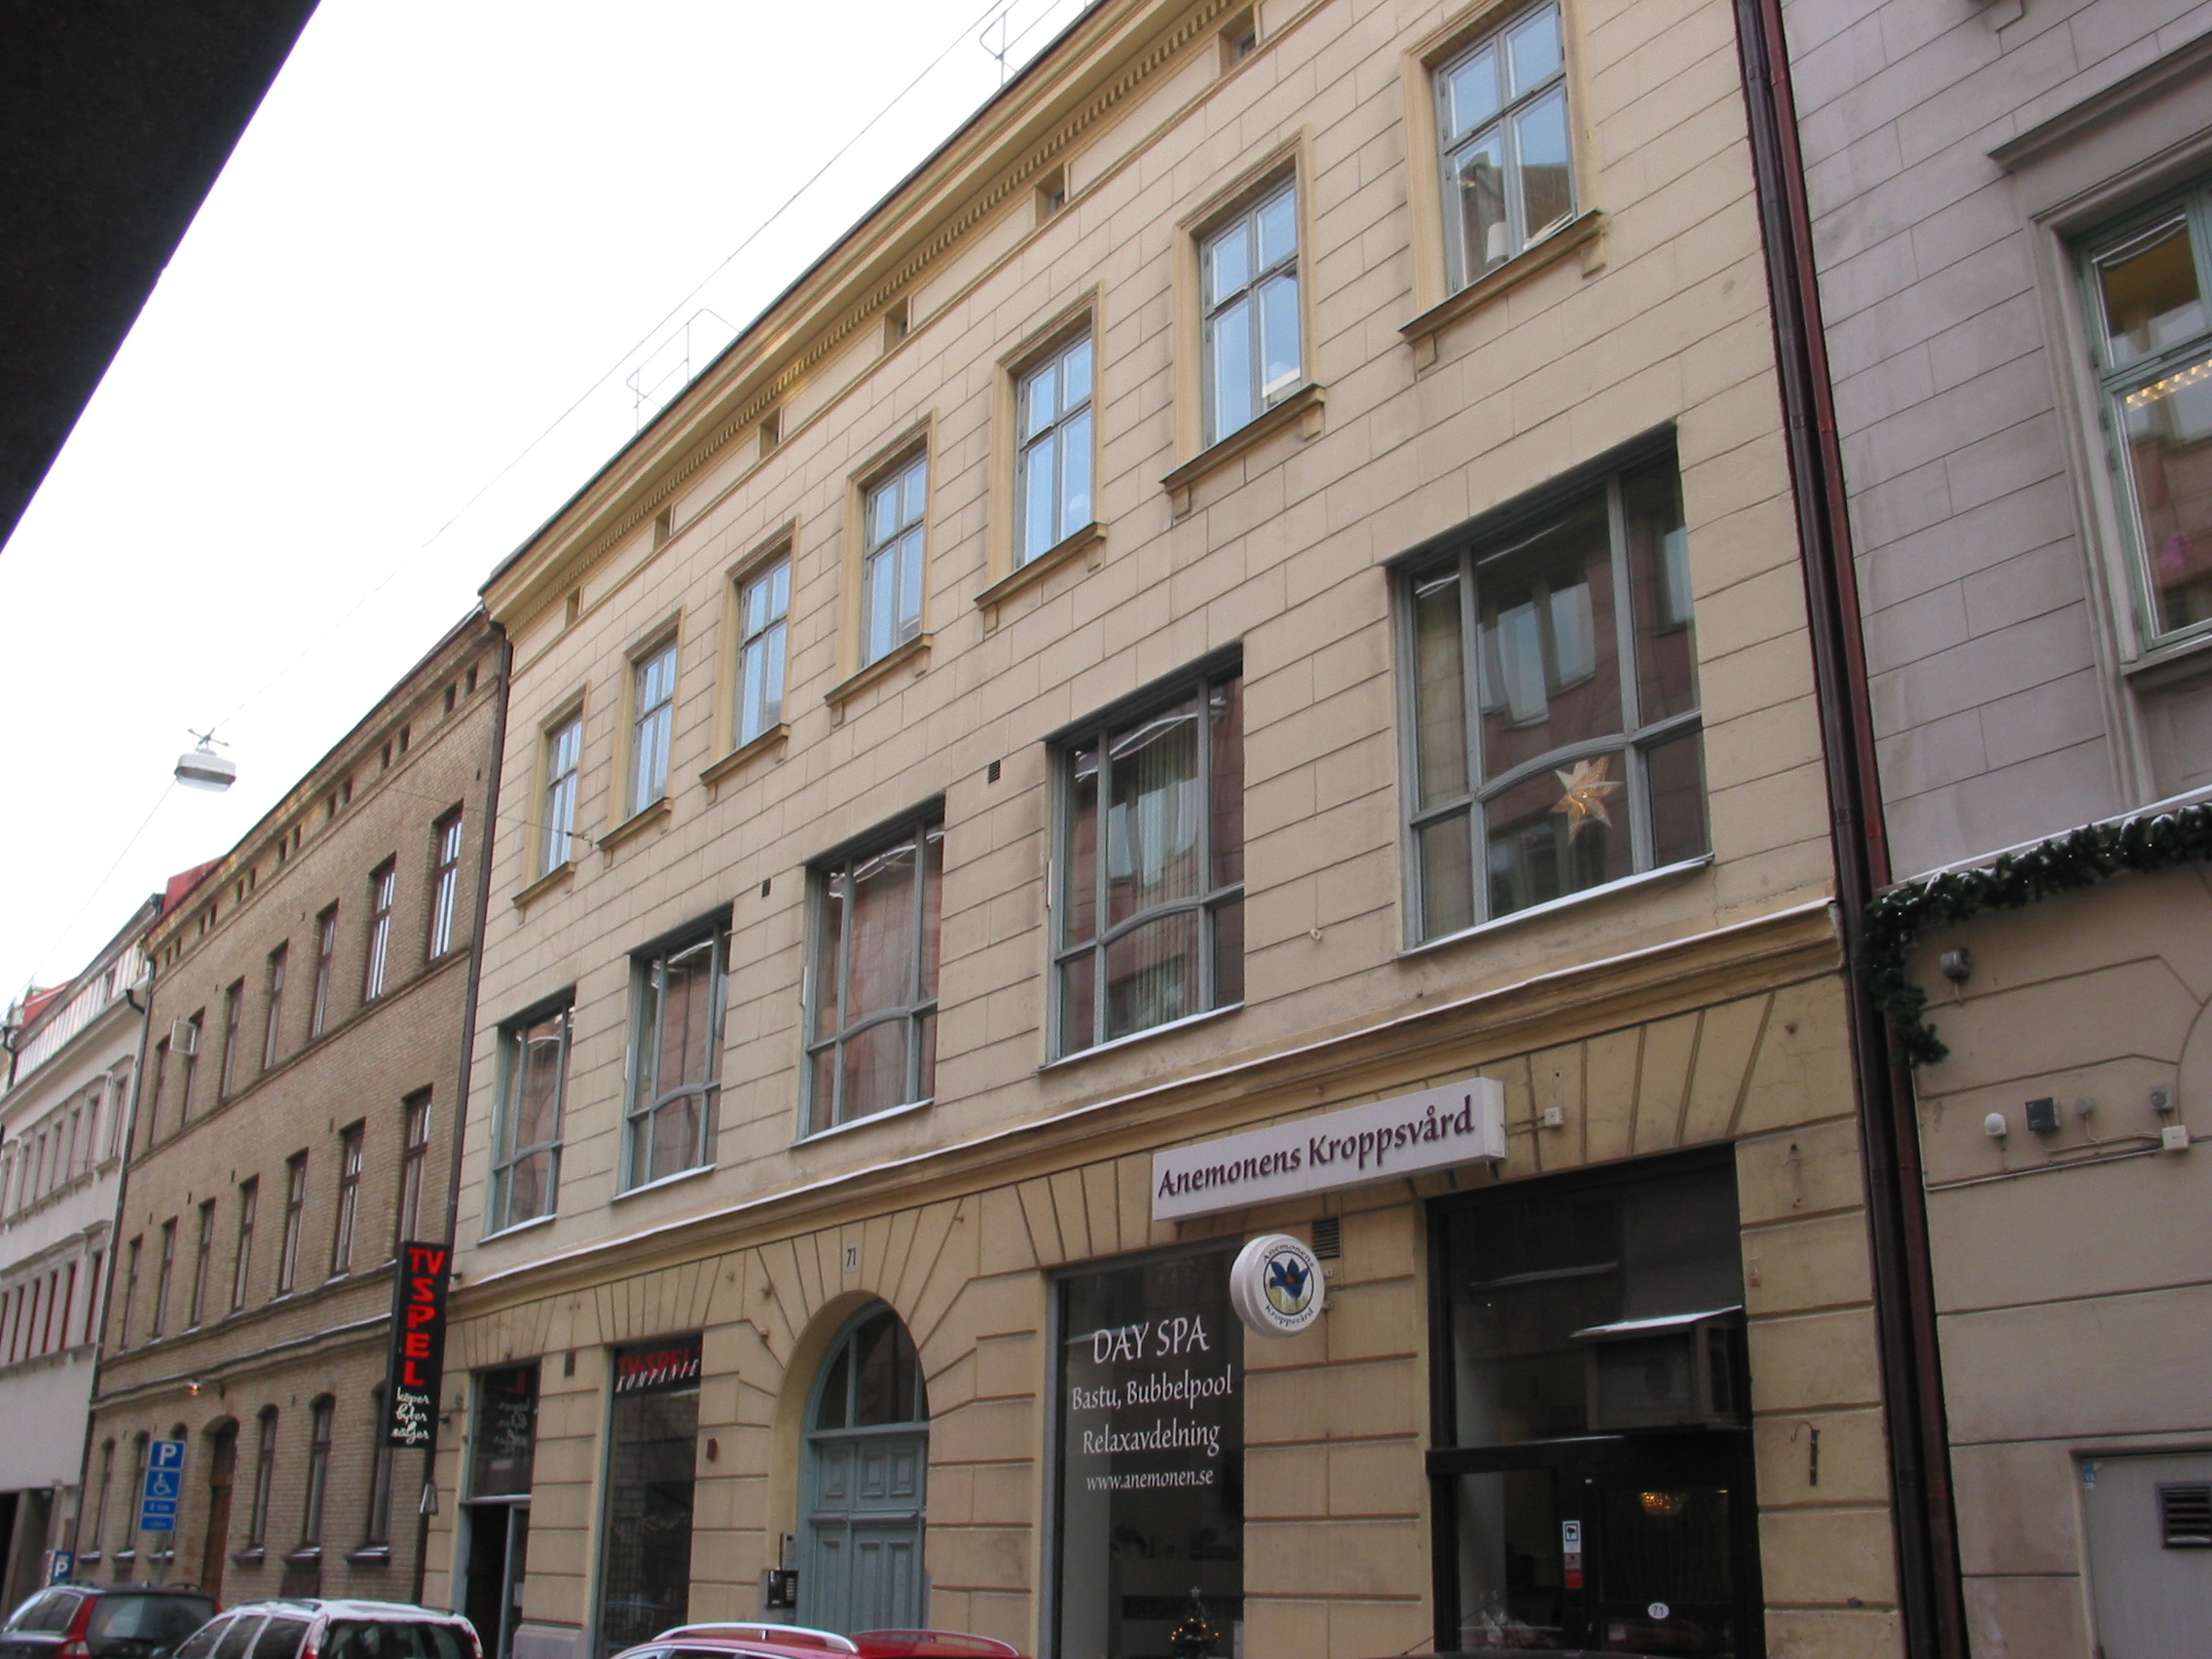 Byggnaden uppfördes 1853, enligt byggmästare A Krügers ritningar, i nyrenässansstil. Fasaden är välbevarad, bortsett från bl.a. de bytta fönstren i andra våningen. Byggnaden hör ihop utseendemässigt med grannbyggnaden (skymtar till höger) som har en annan färgsättning.